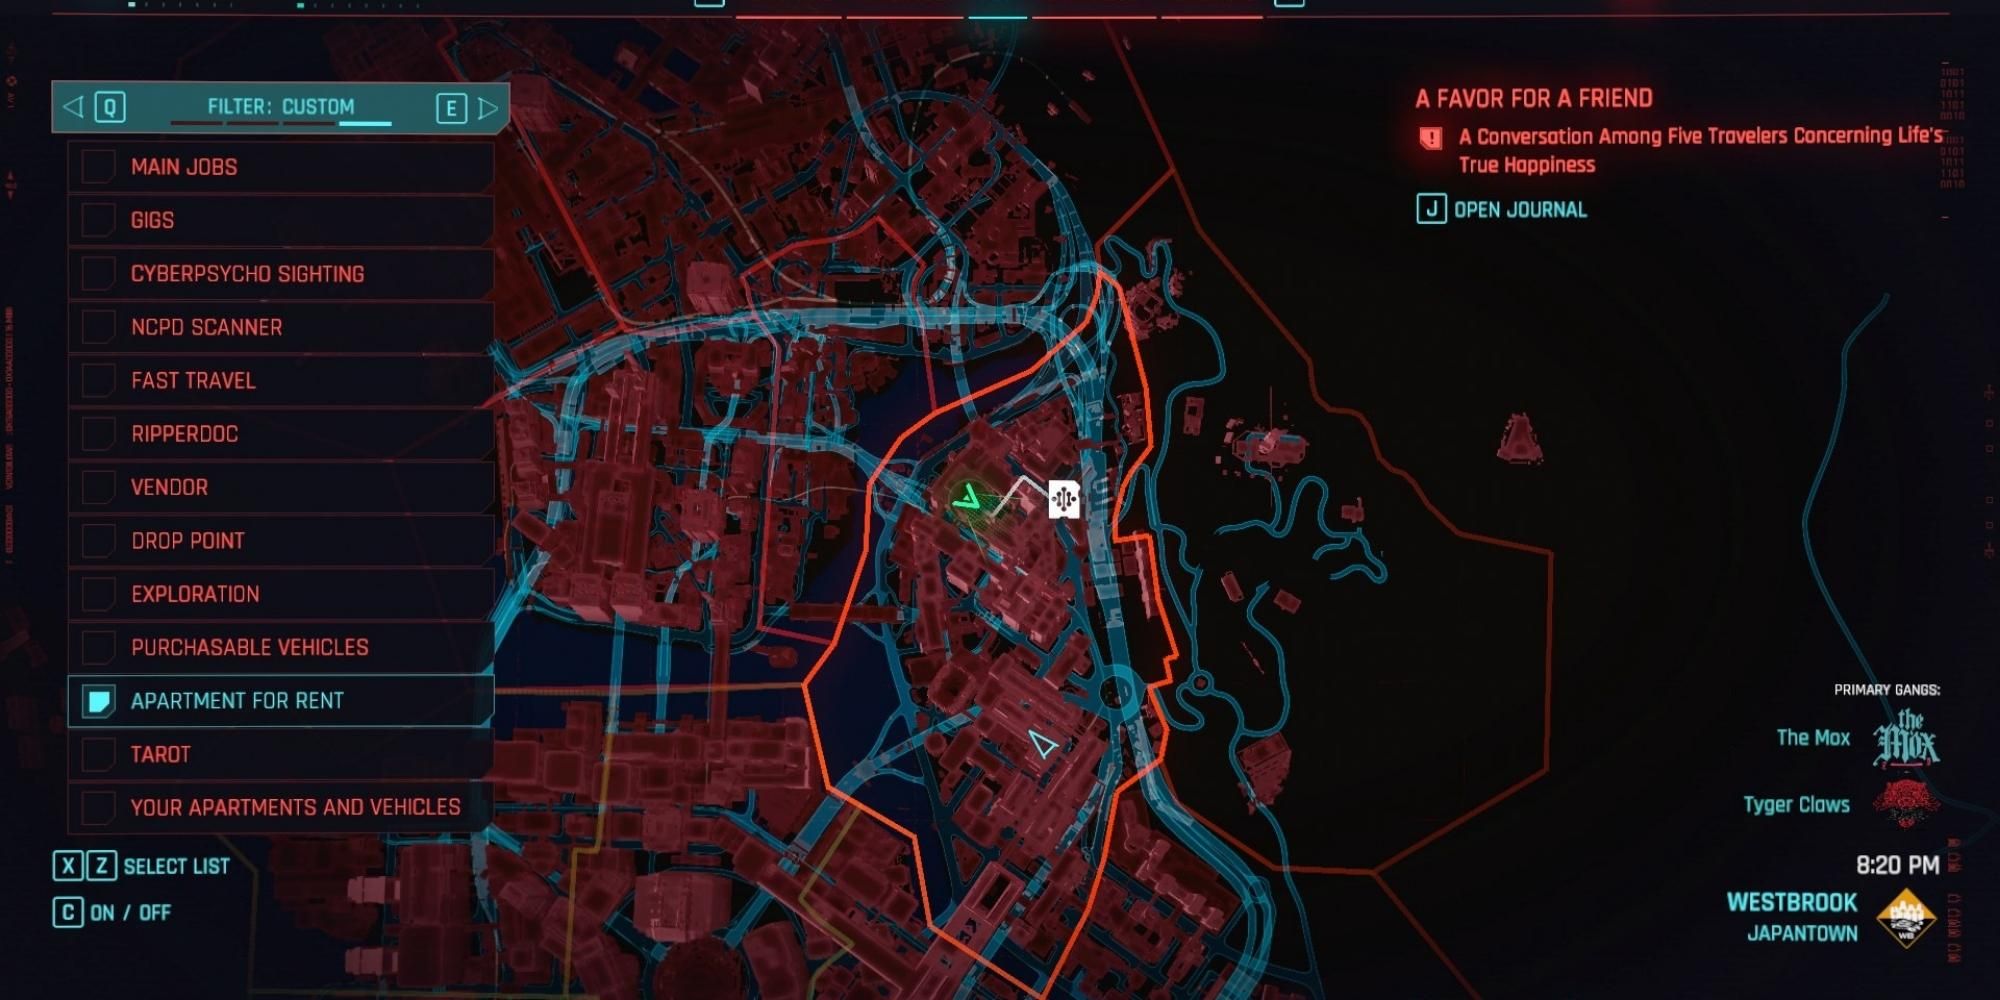 capture d'écran de la carte du fournisseur Netrunner à Westbrook, Japantown dans Cyberpunk 2077